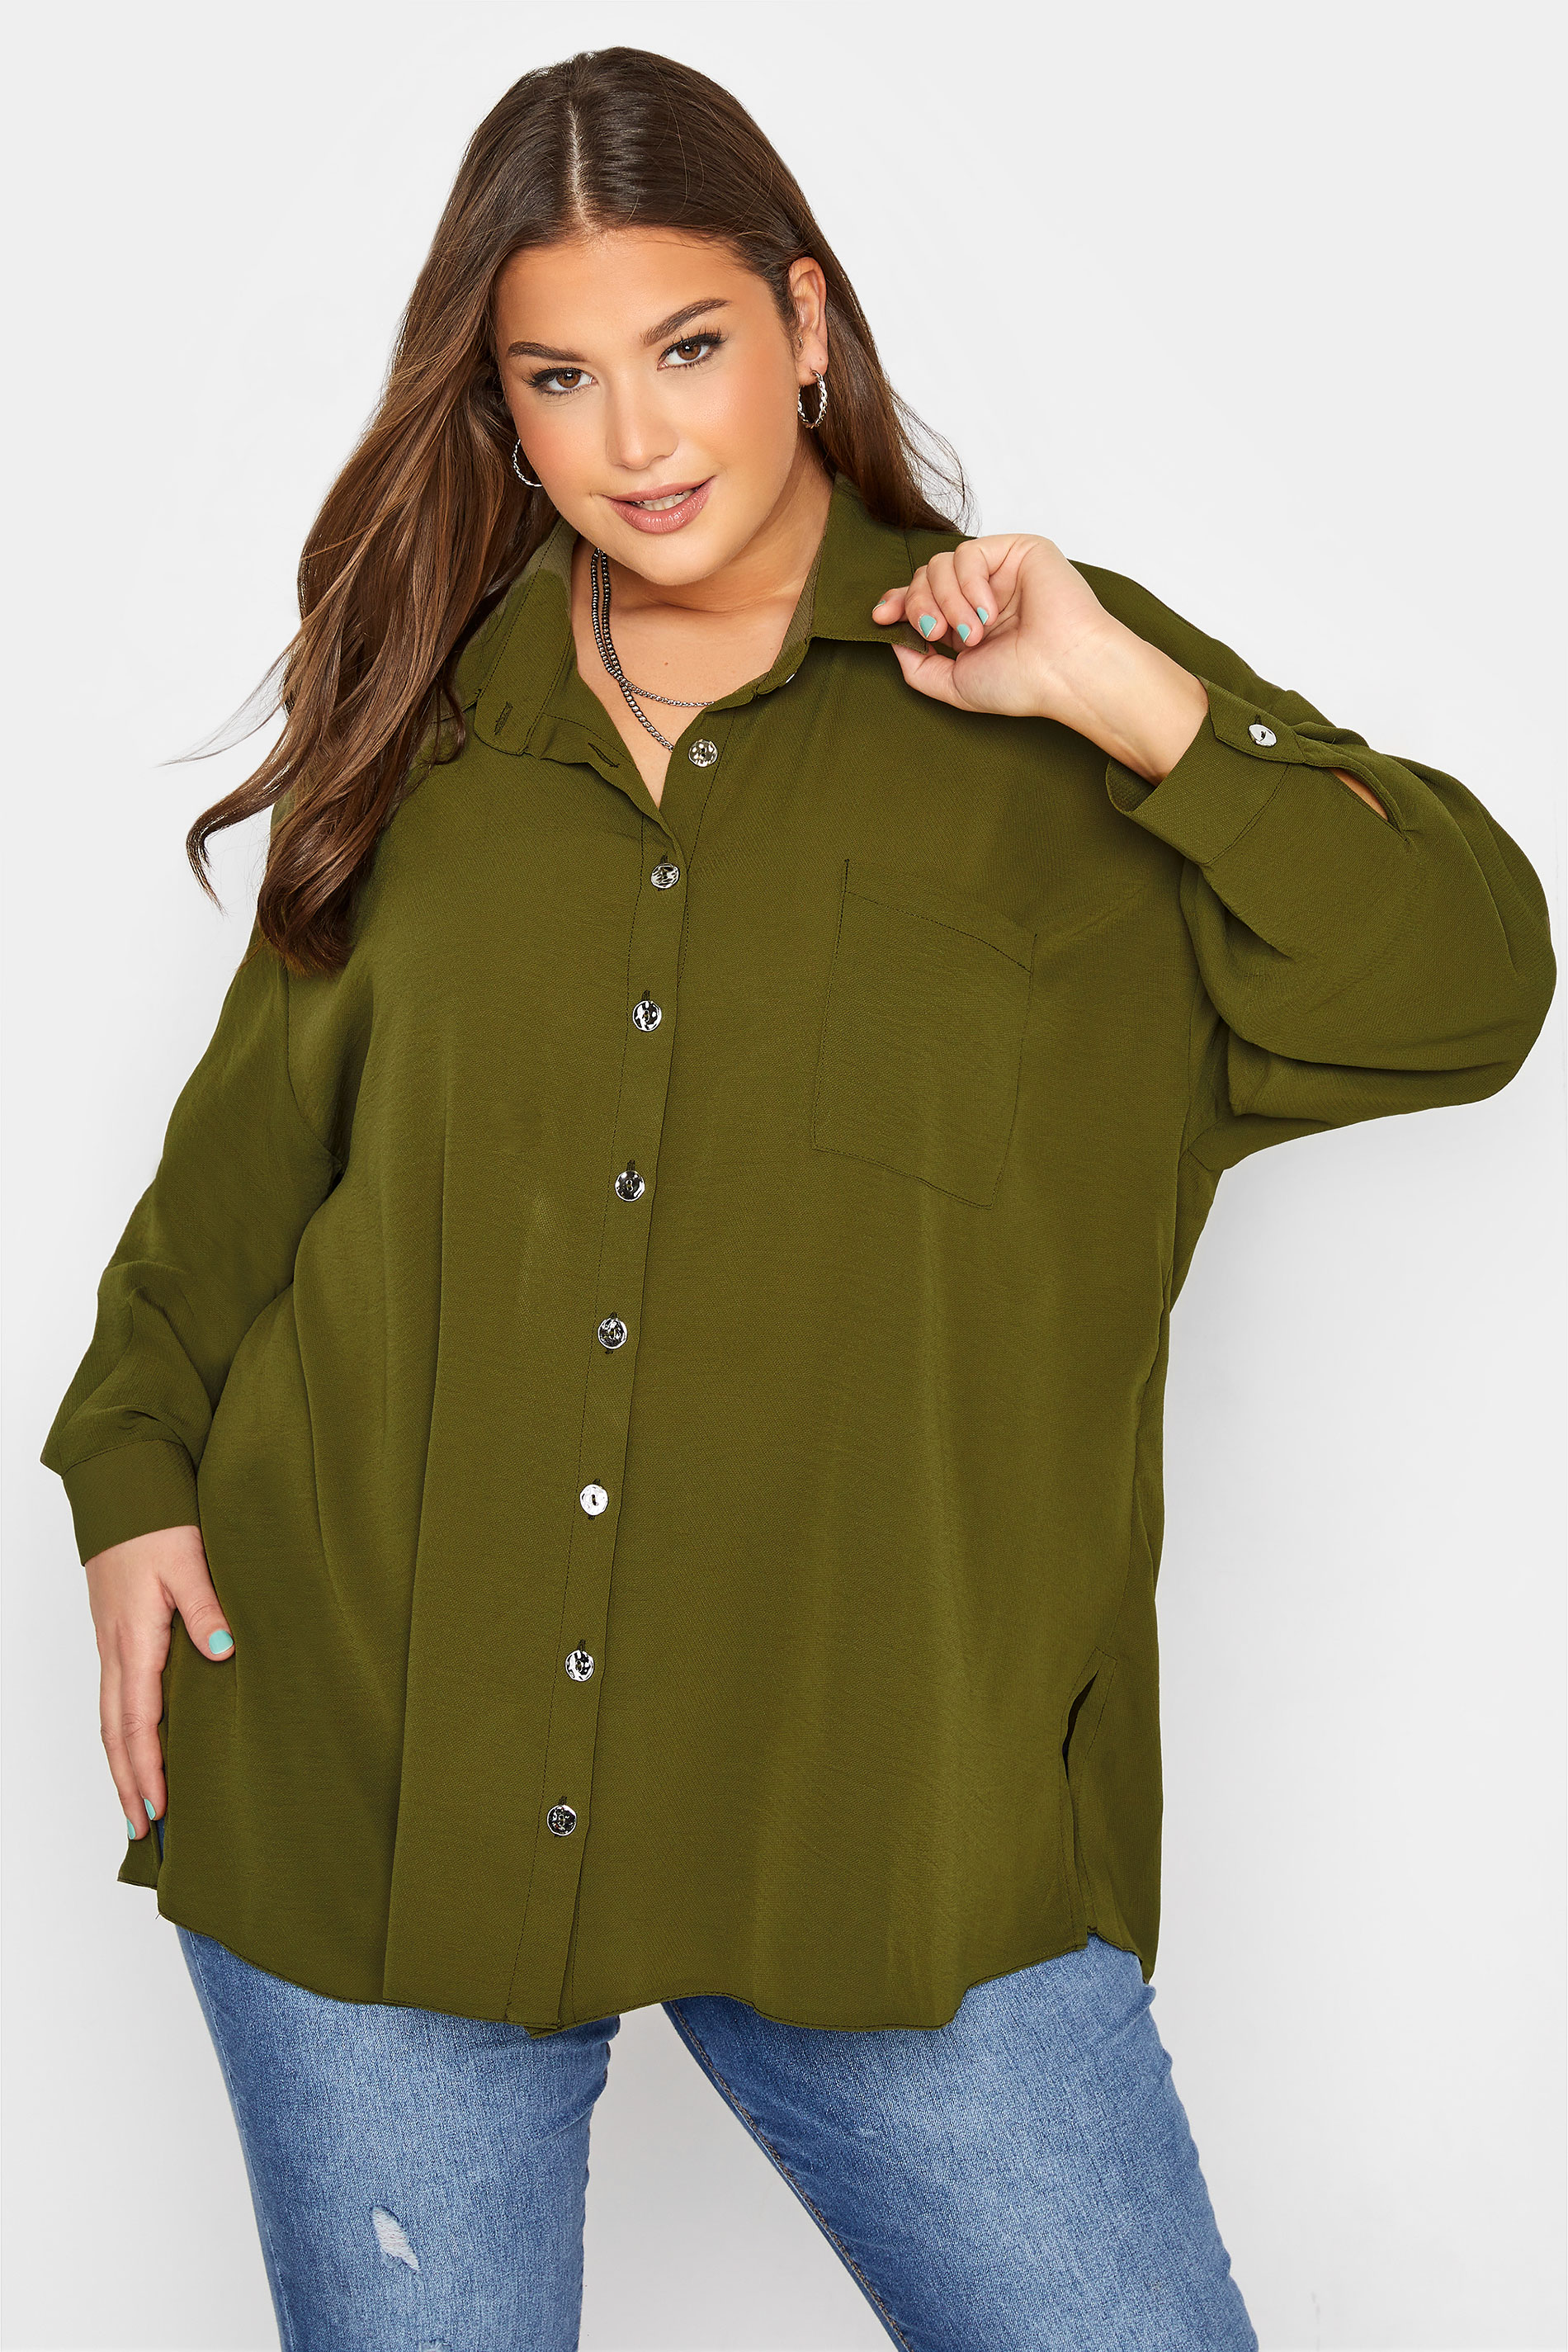 Curve Khaki Green Button Through Shirt_A.jpg